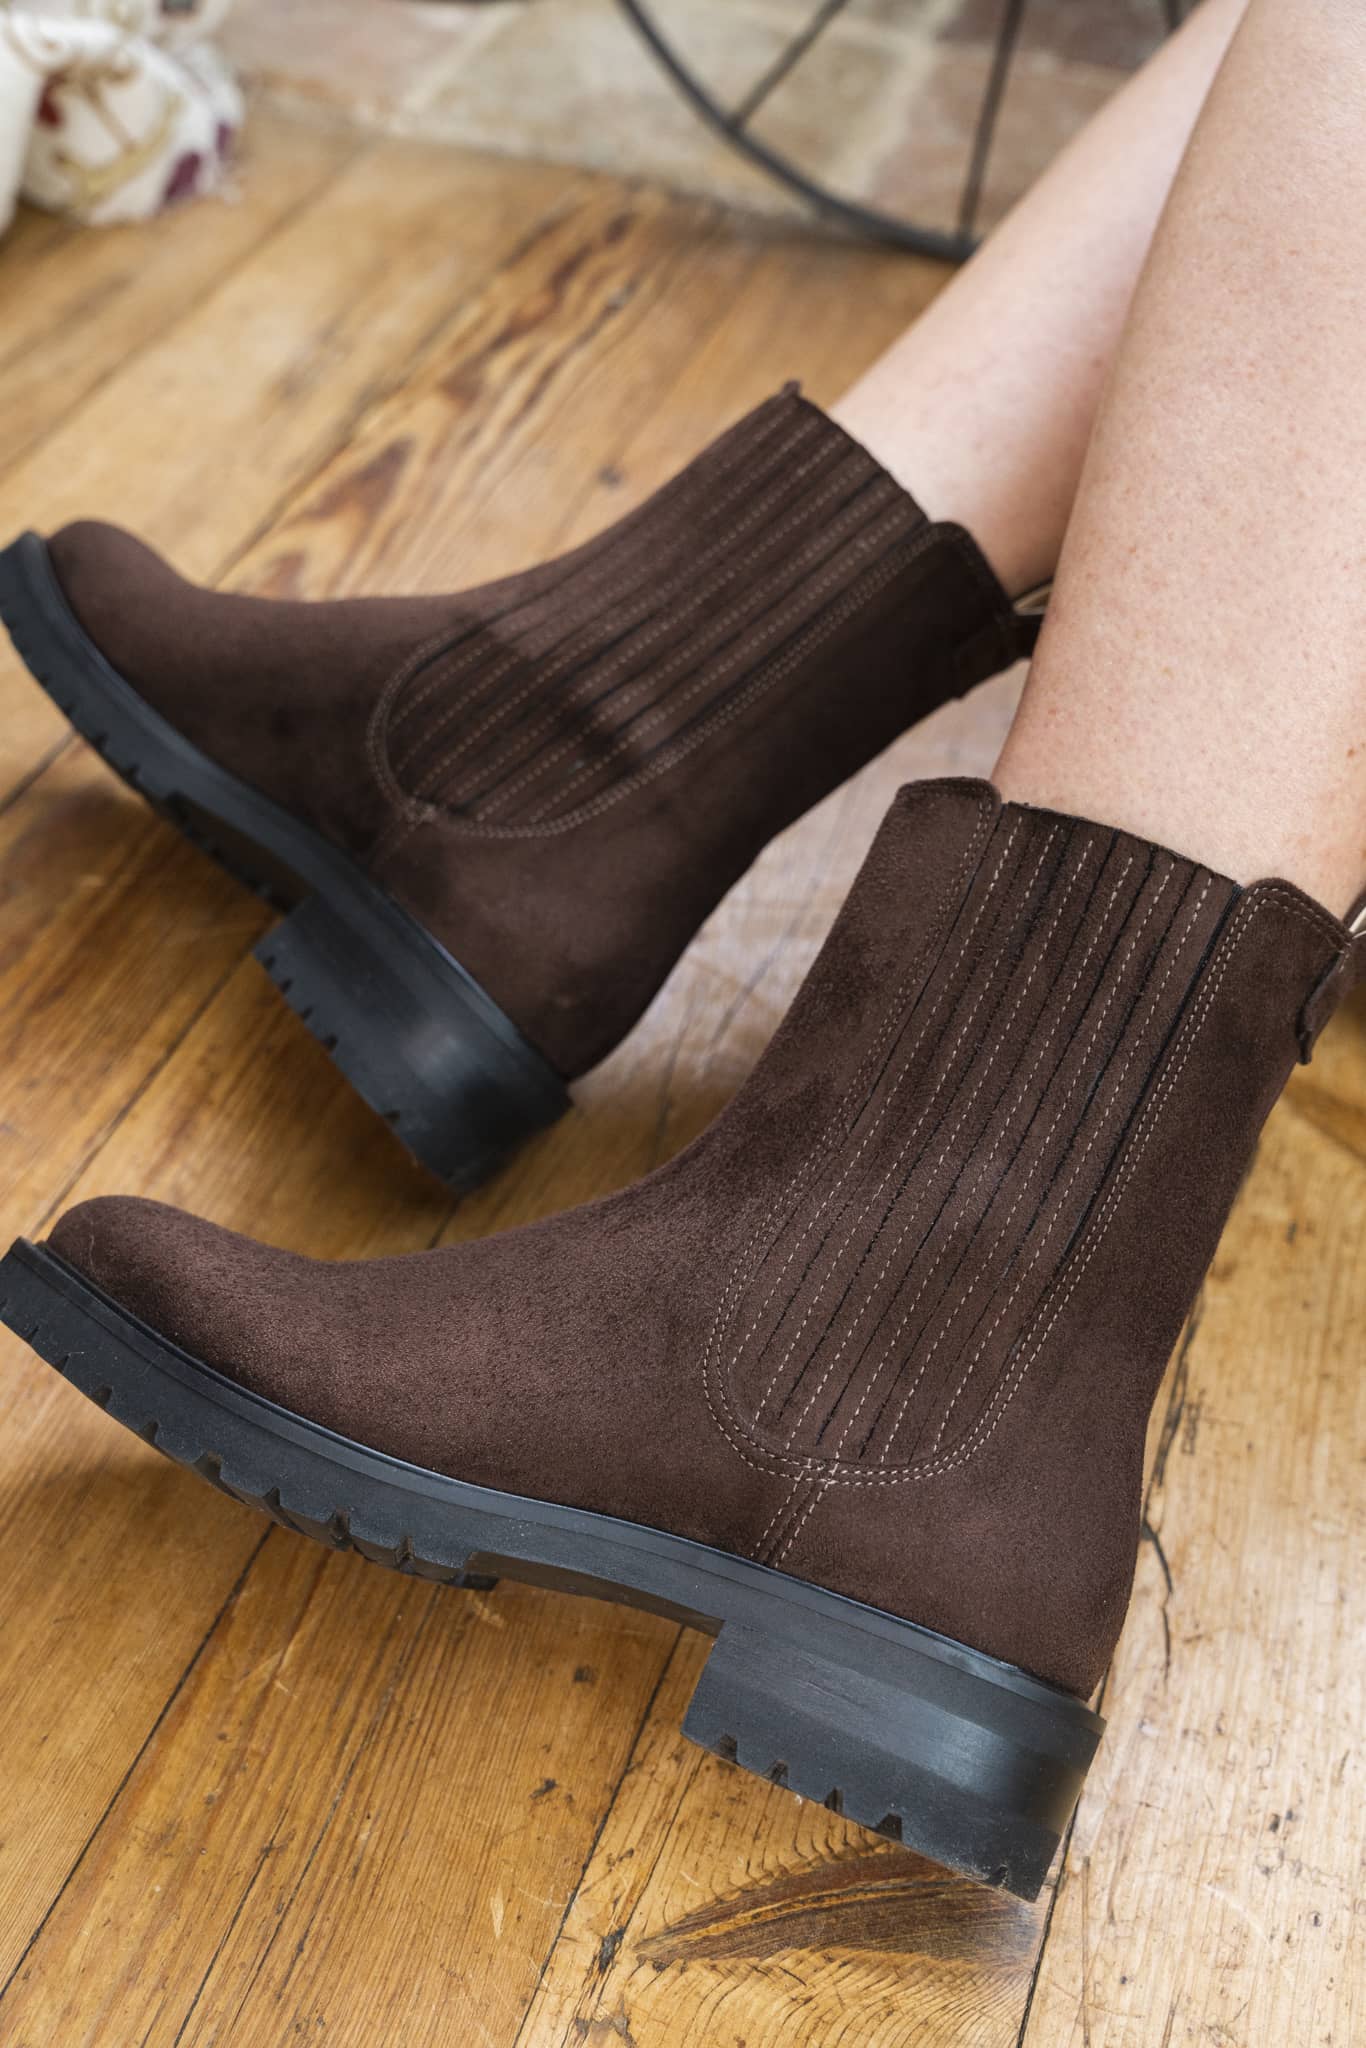 Bottines plates marron foncé style chelsea boots sans cuir pour femme Mystique Minuit sur Terre